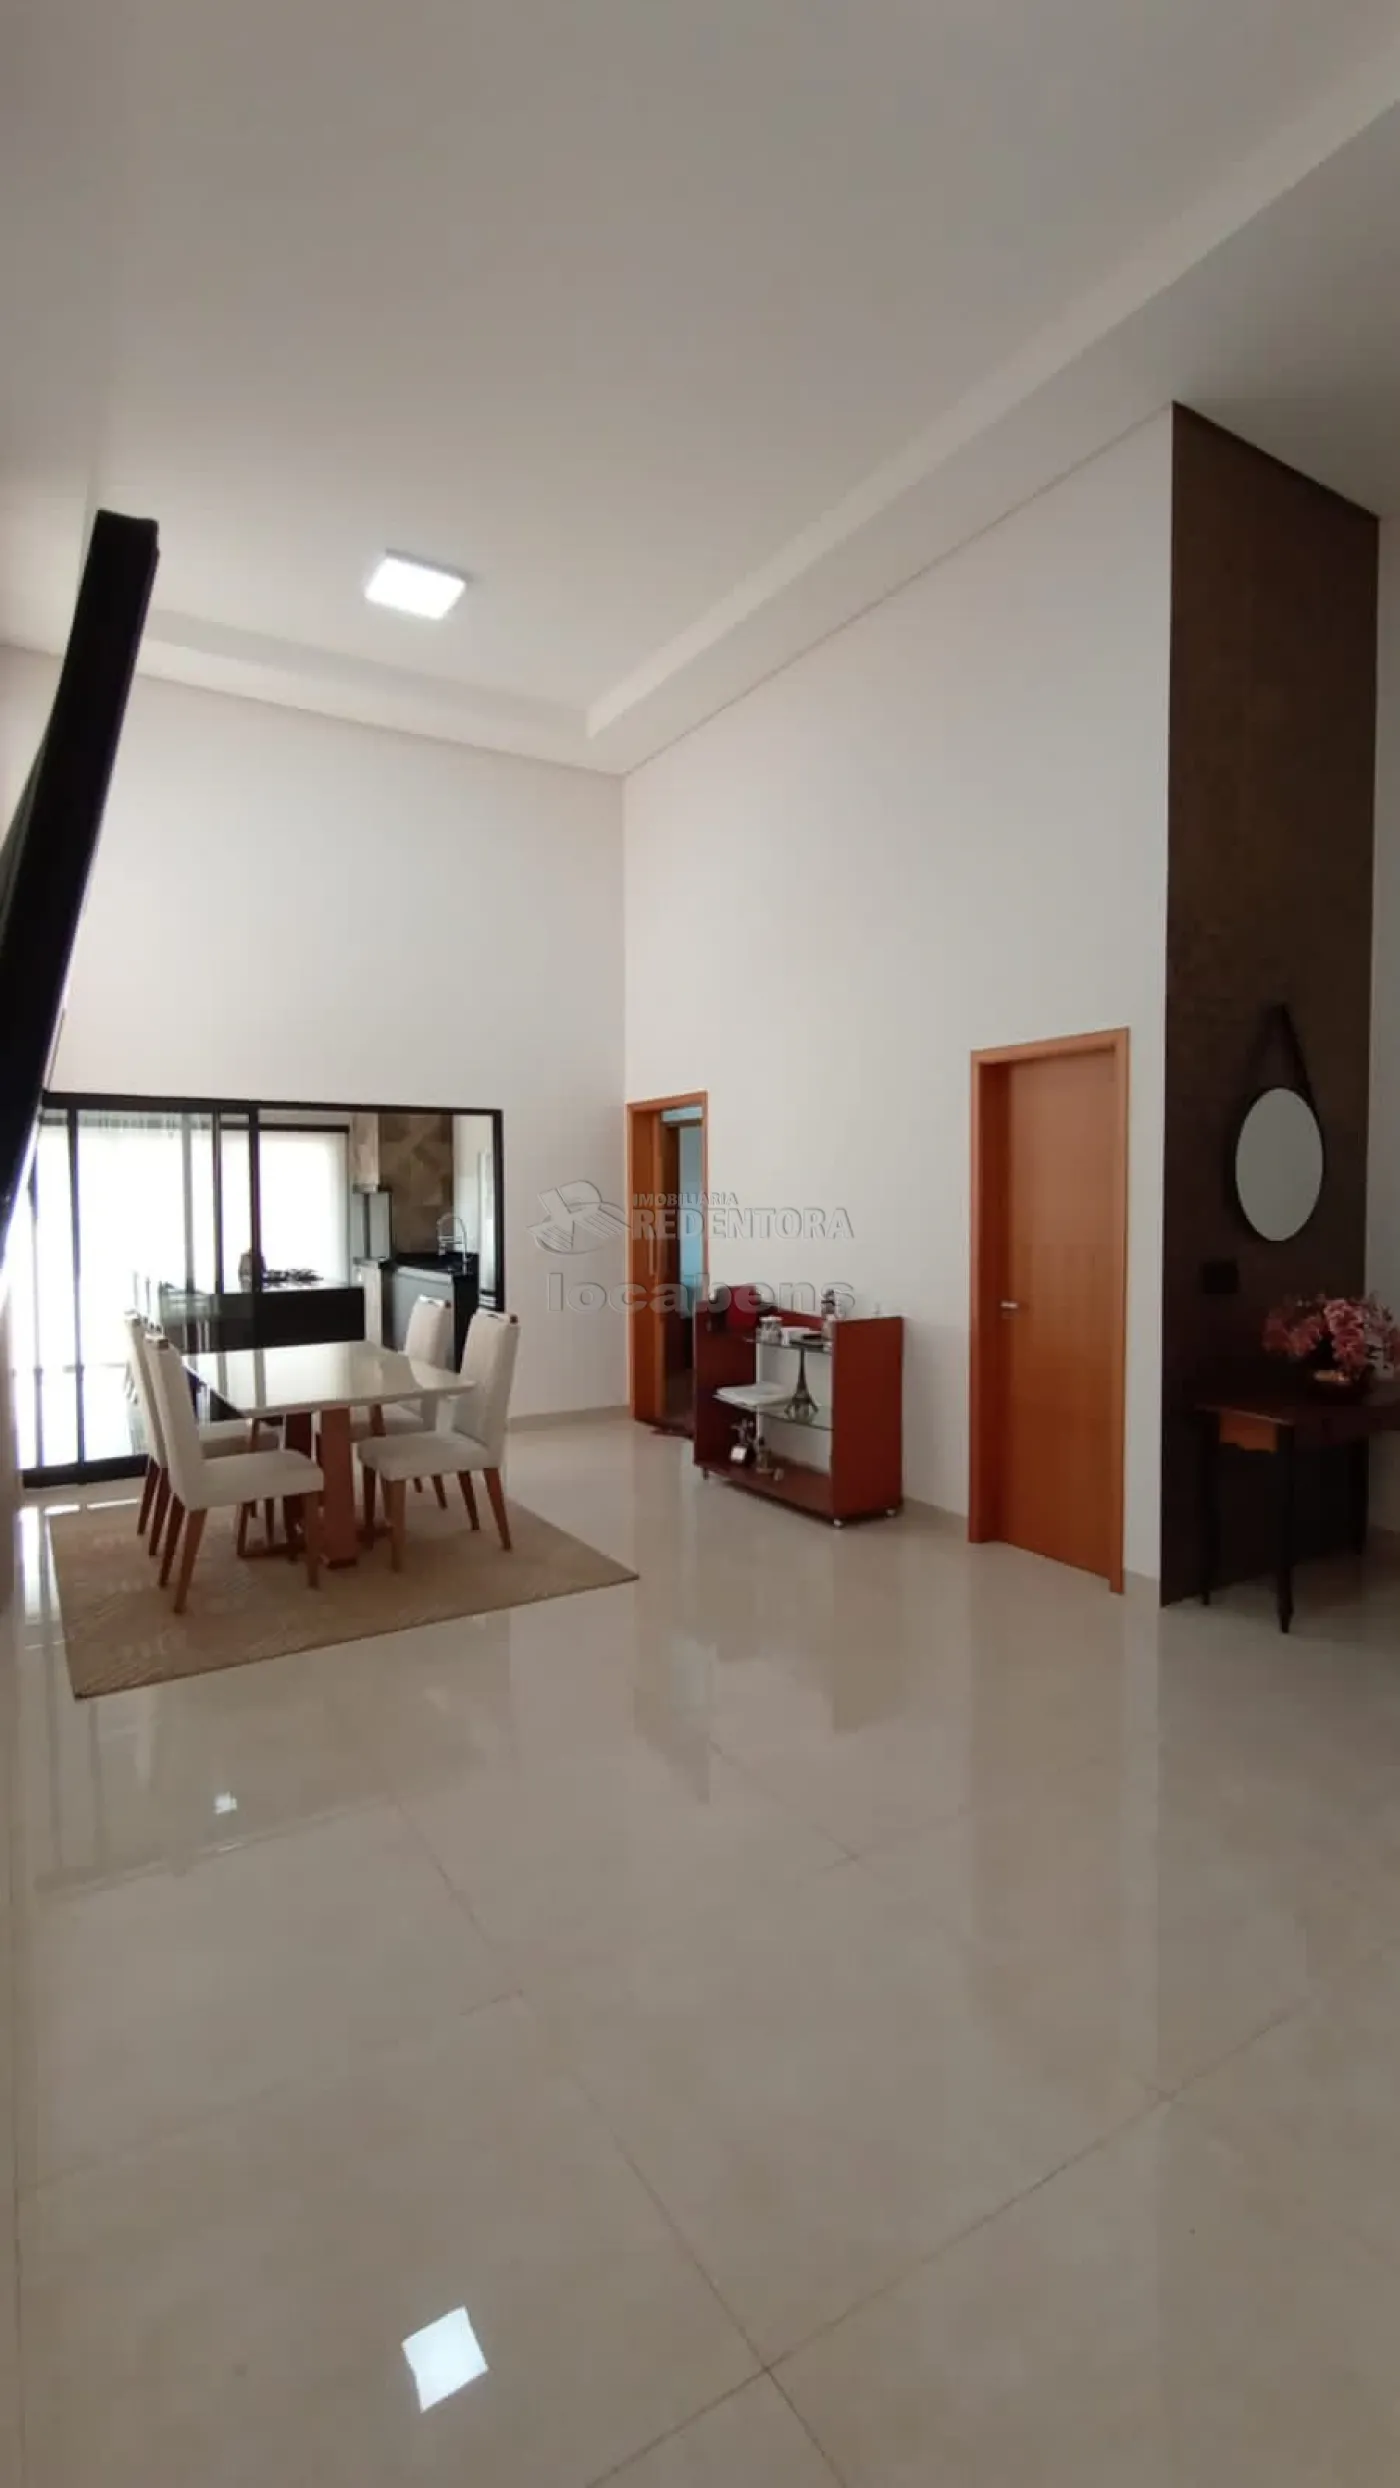 Comprar Casa / Condomínio em Mirassol apenas R$ 800.000,00 - Foto 32